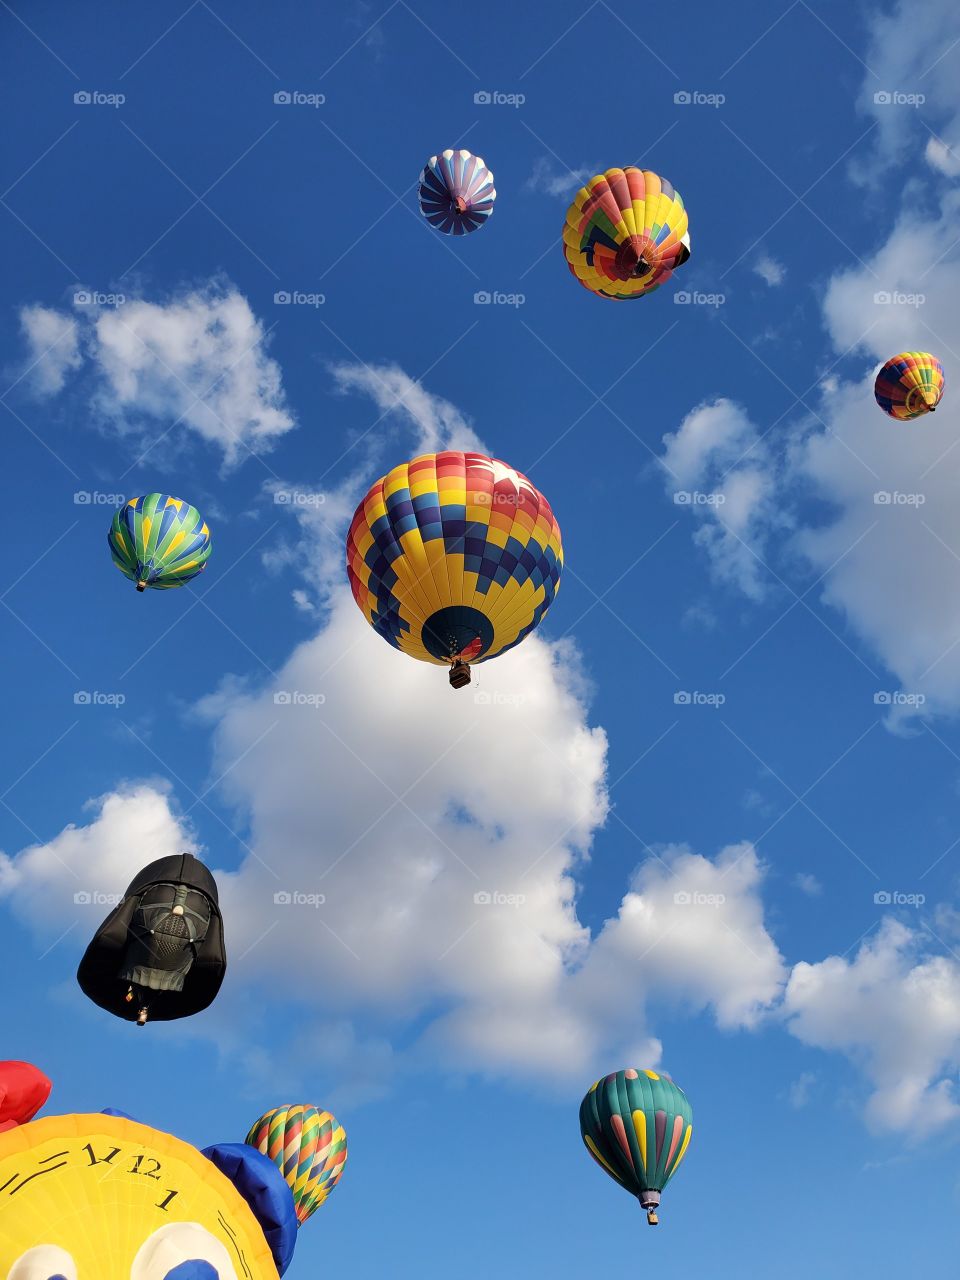 Hot Air Balloons against Blue Sky & Clouds, Darth Vader & Star Wars, The Great Reno Balloon Race 2019 [Reno, NV USA]